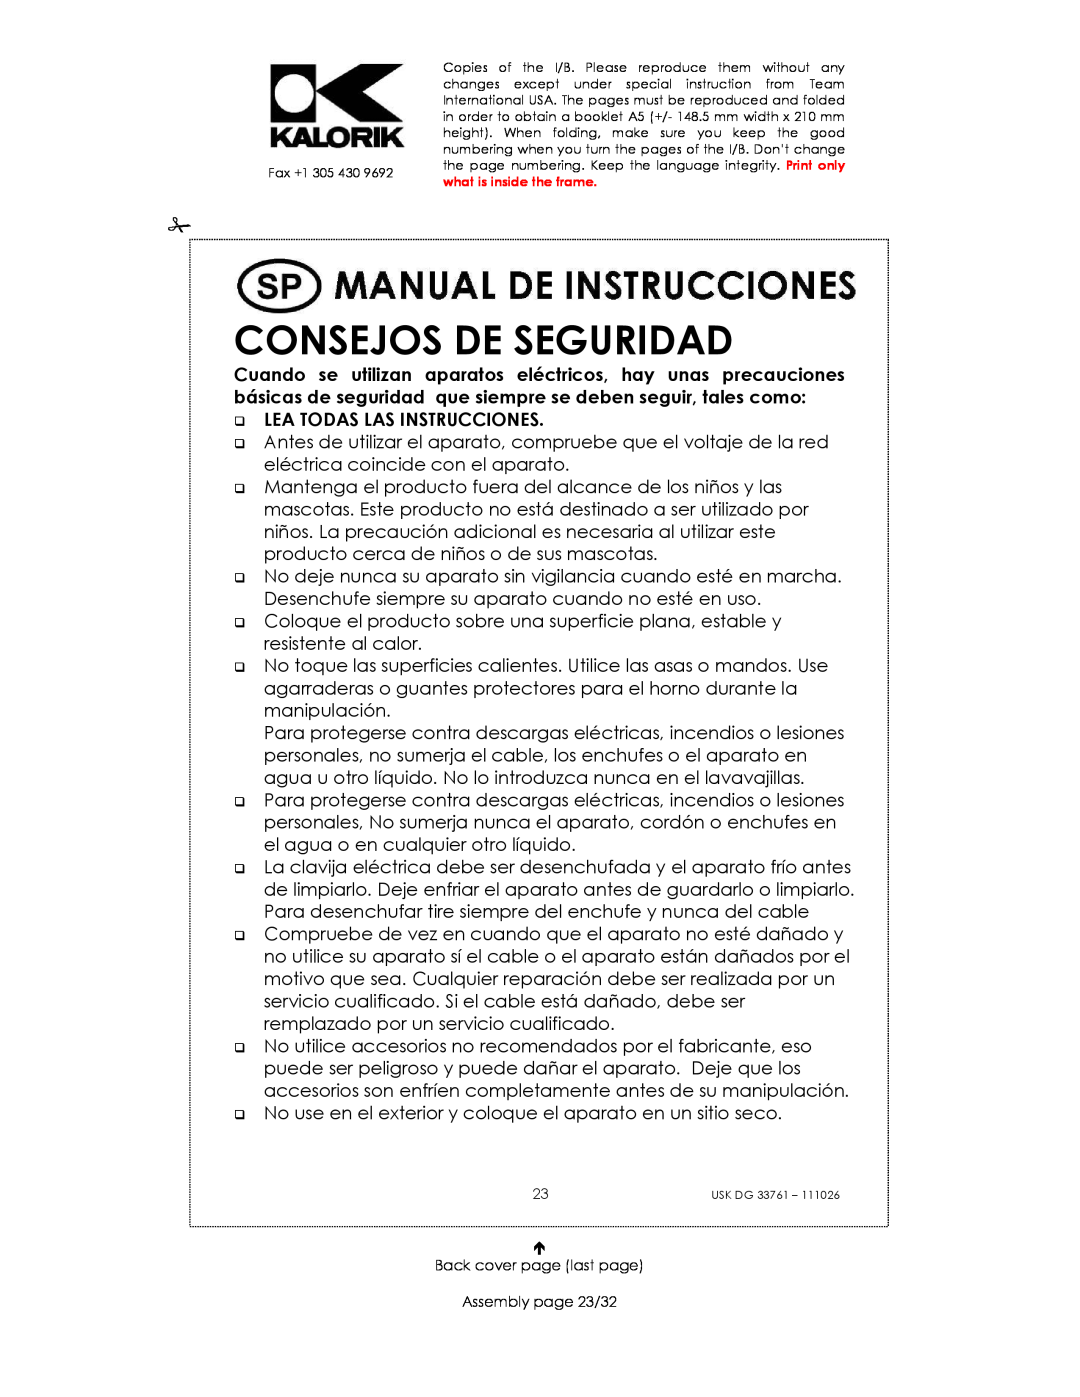 Kalorik USK DG 33761 manual Consejos De Seguridad, Lea Todas Las Instrucciones 